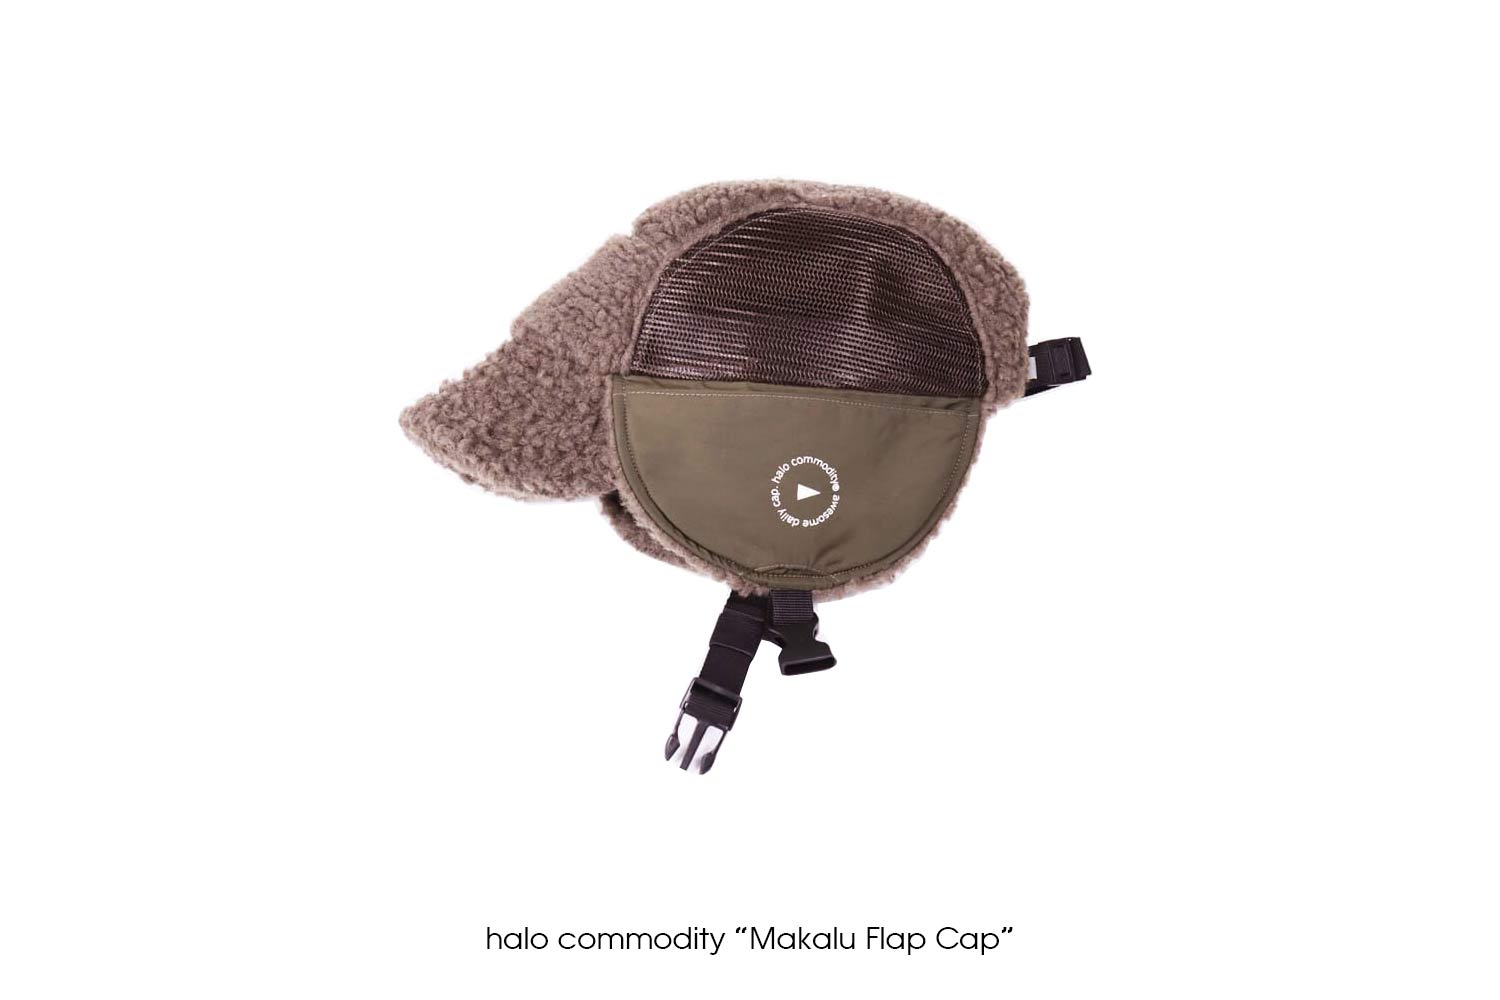 halo commodity "Makalu Flap Cap"